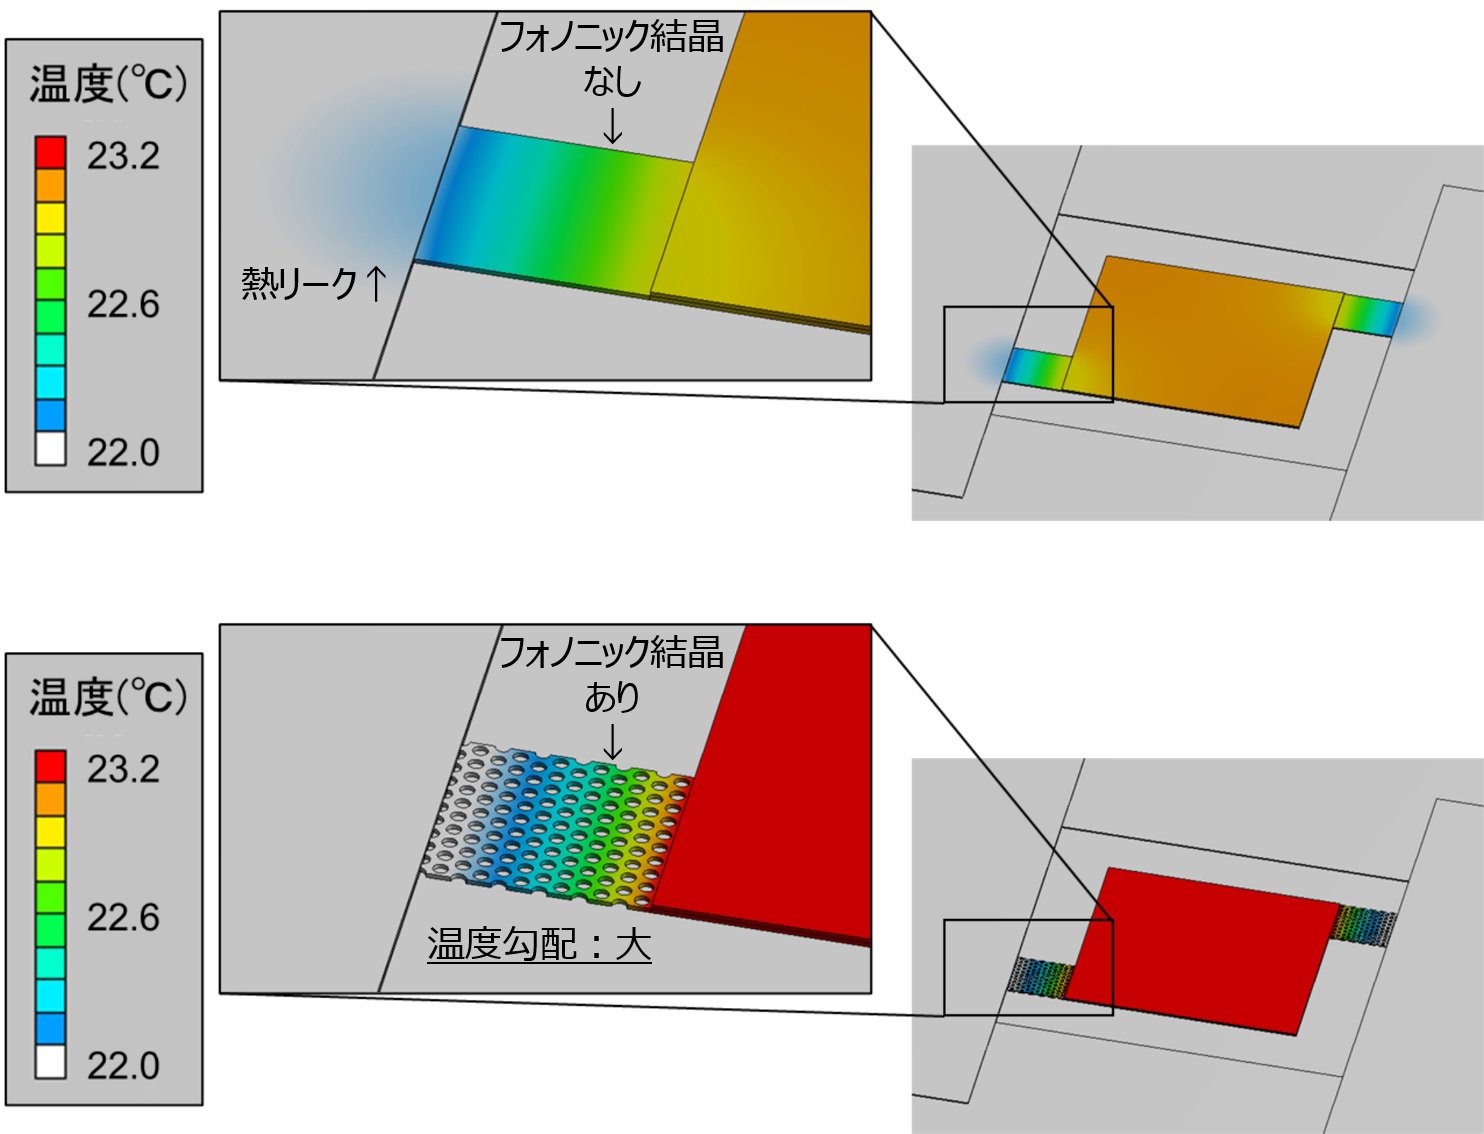 フォノニック結晶構造の有無によるセンサ受光部の熱伝導特性の比較イメージ図